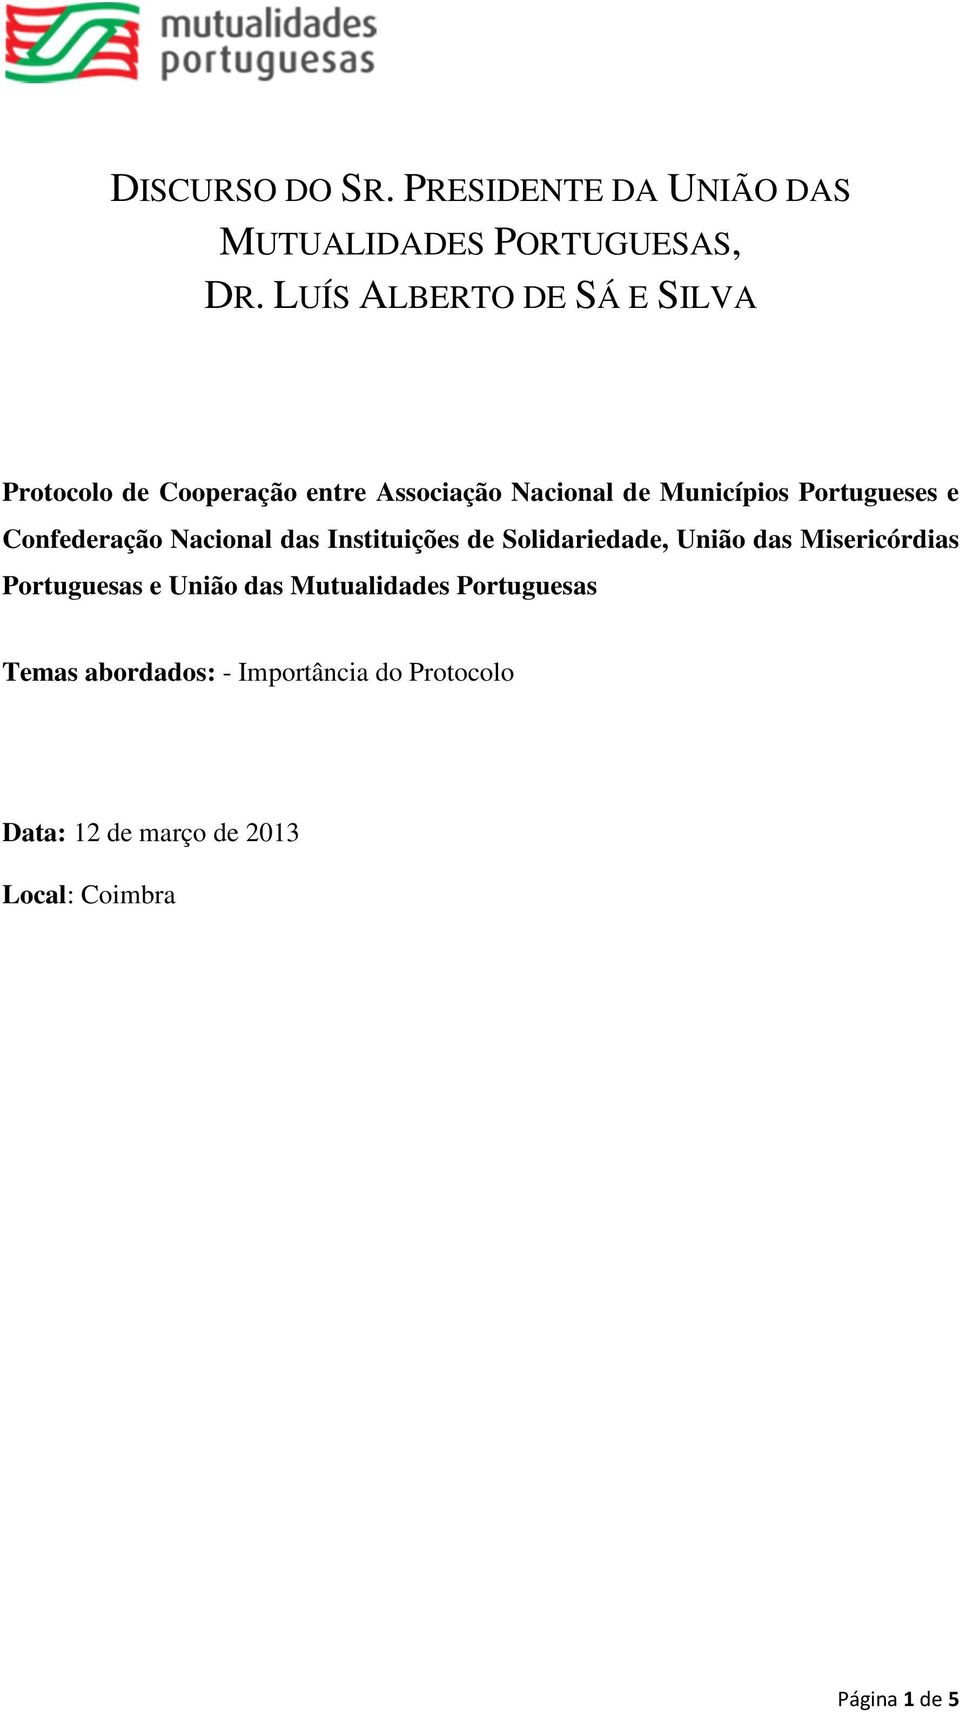 Portugueses e Confederação Nacional das Instituições de Solidariedade, União das Misericórdias